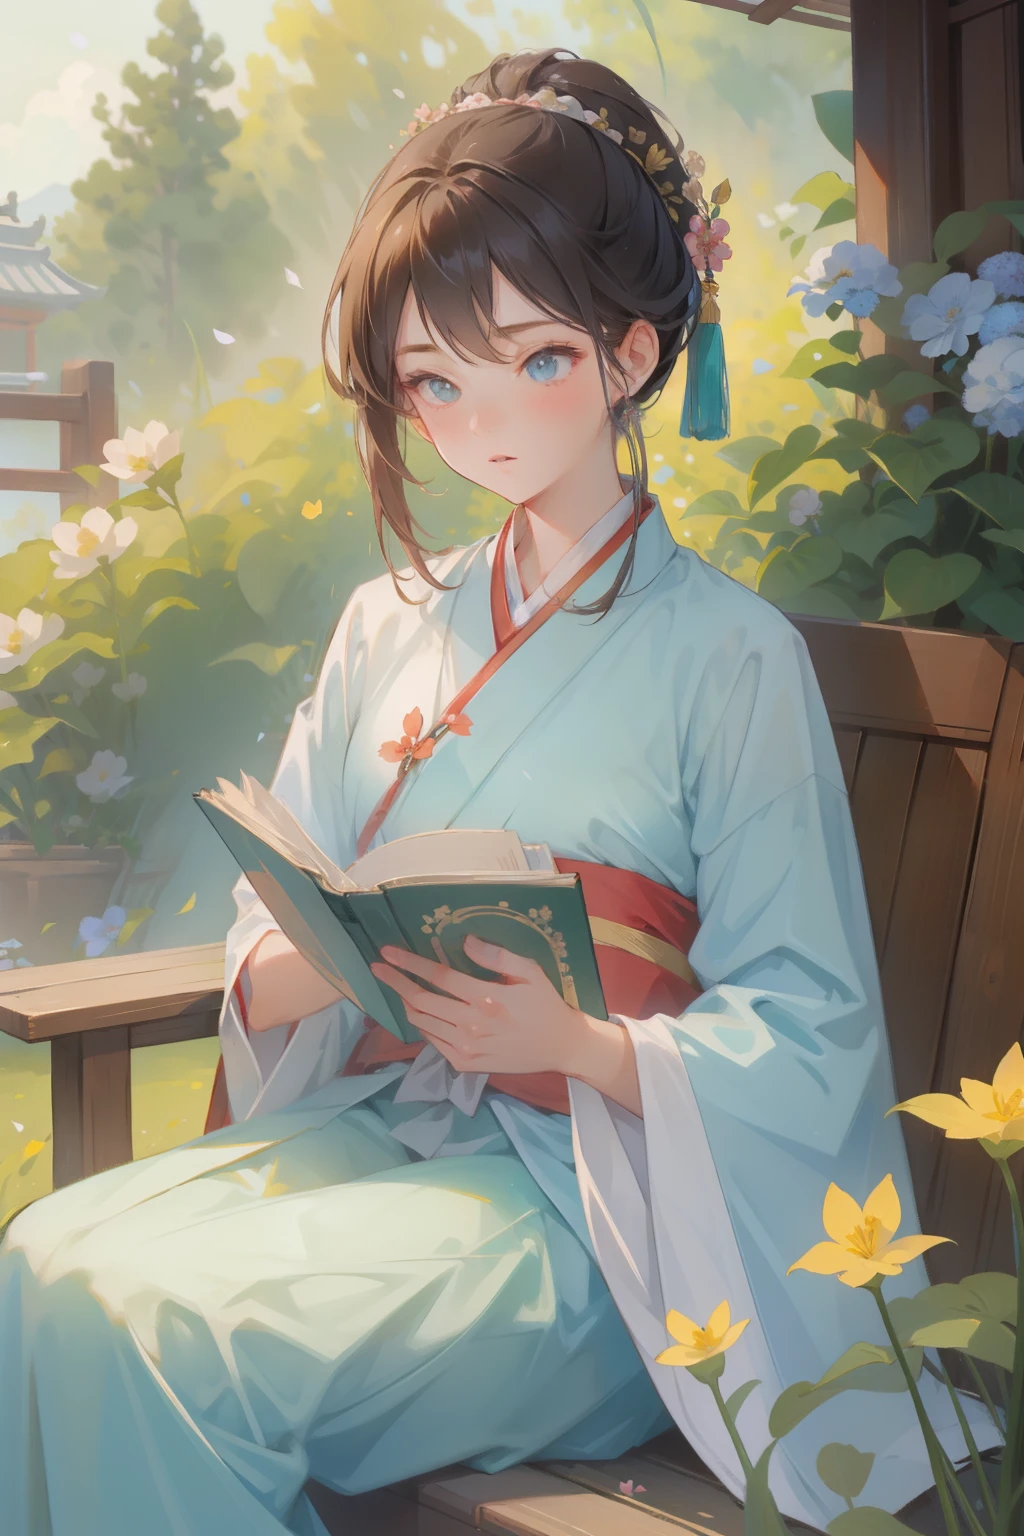 (Obra de arte), (melhor qualidade), 1 garota, 20 anos de idade, hanfu, Roupas tradicionais chinesas, sentado, lendo um livro, no Jardim, primavera, flores